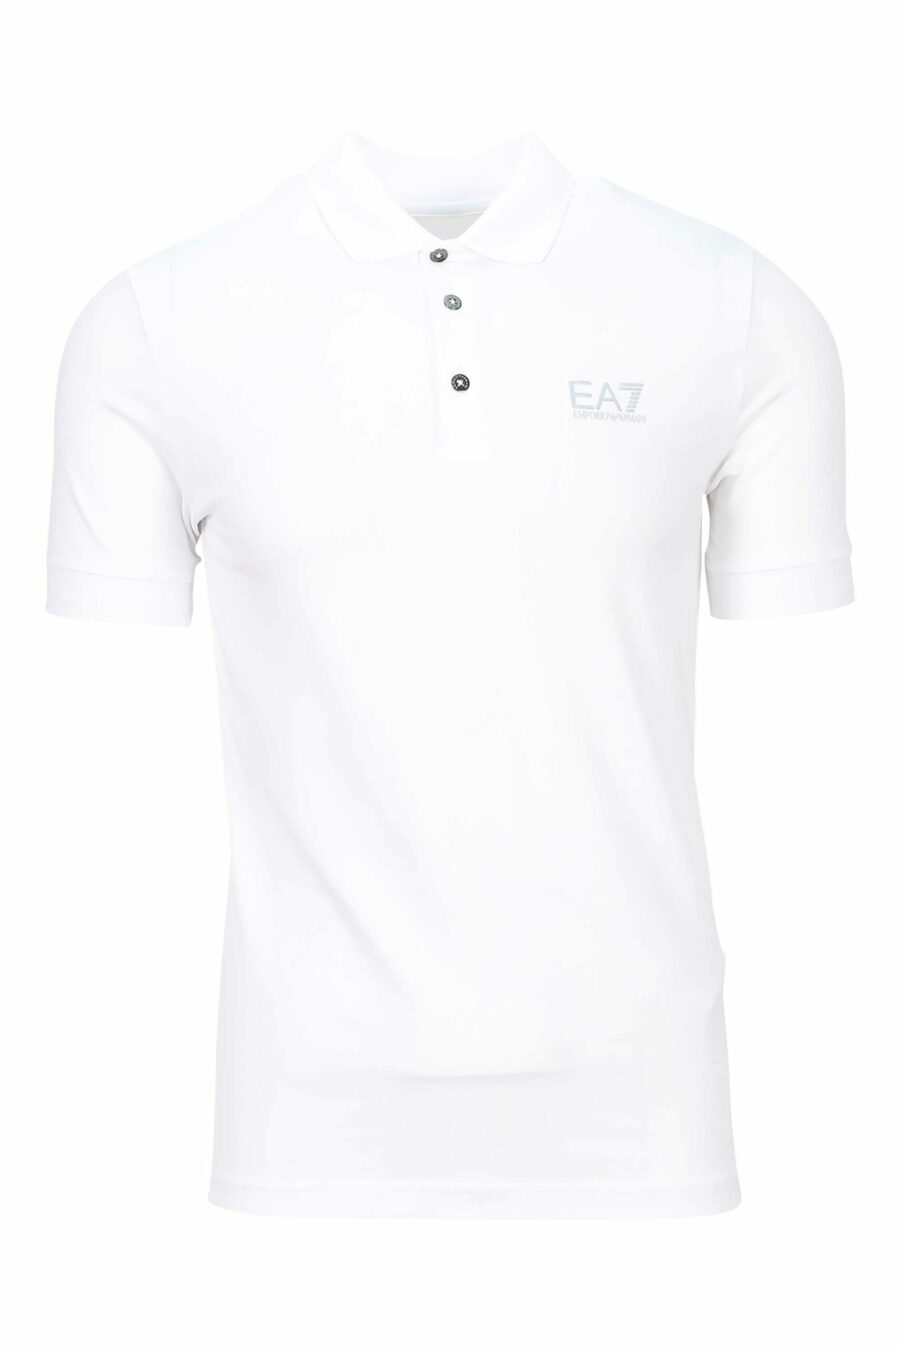 Weißes Poloshirt mit silbernem Minilogo mit Farbverlauf "lux identity" - 8055187159944 1 skaliert